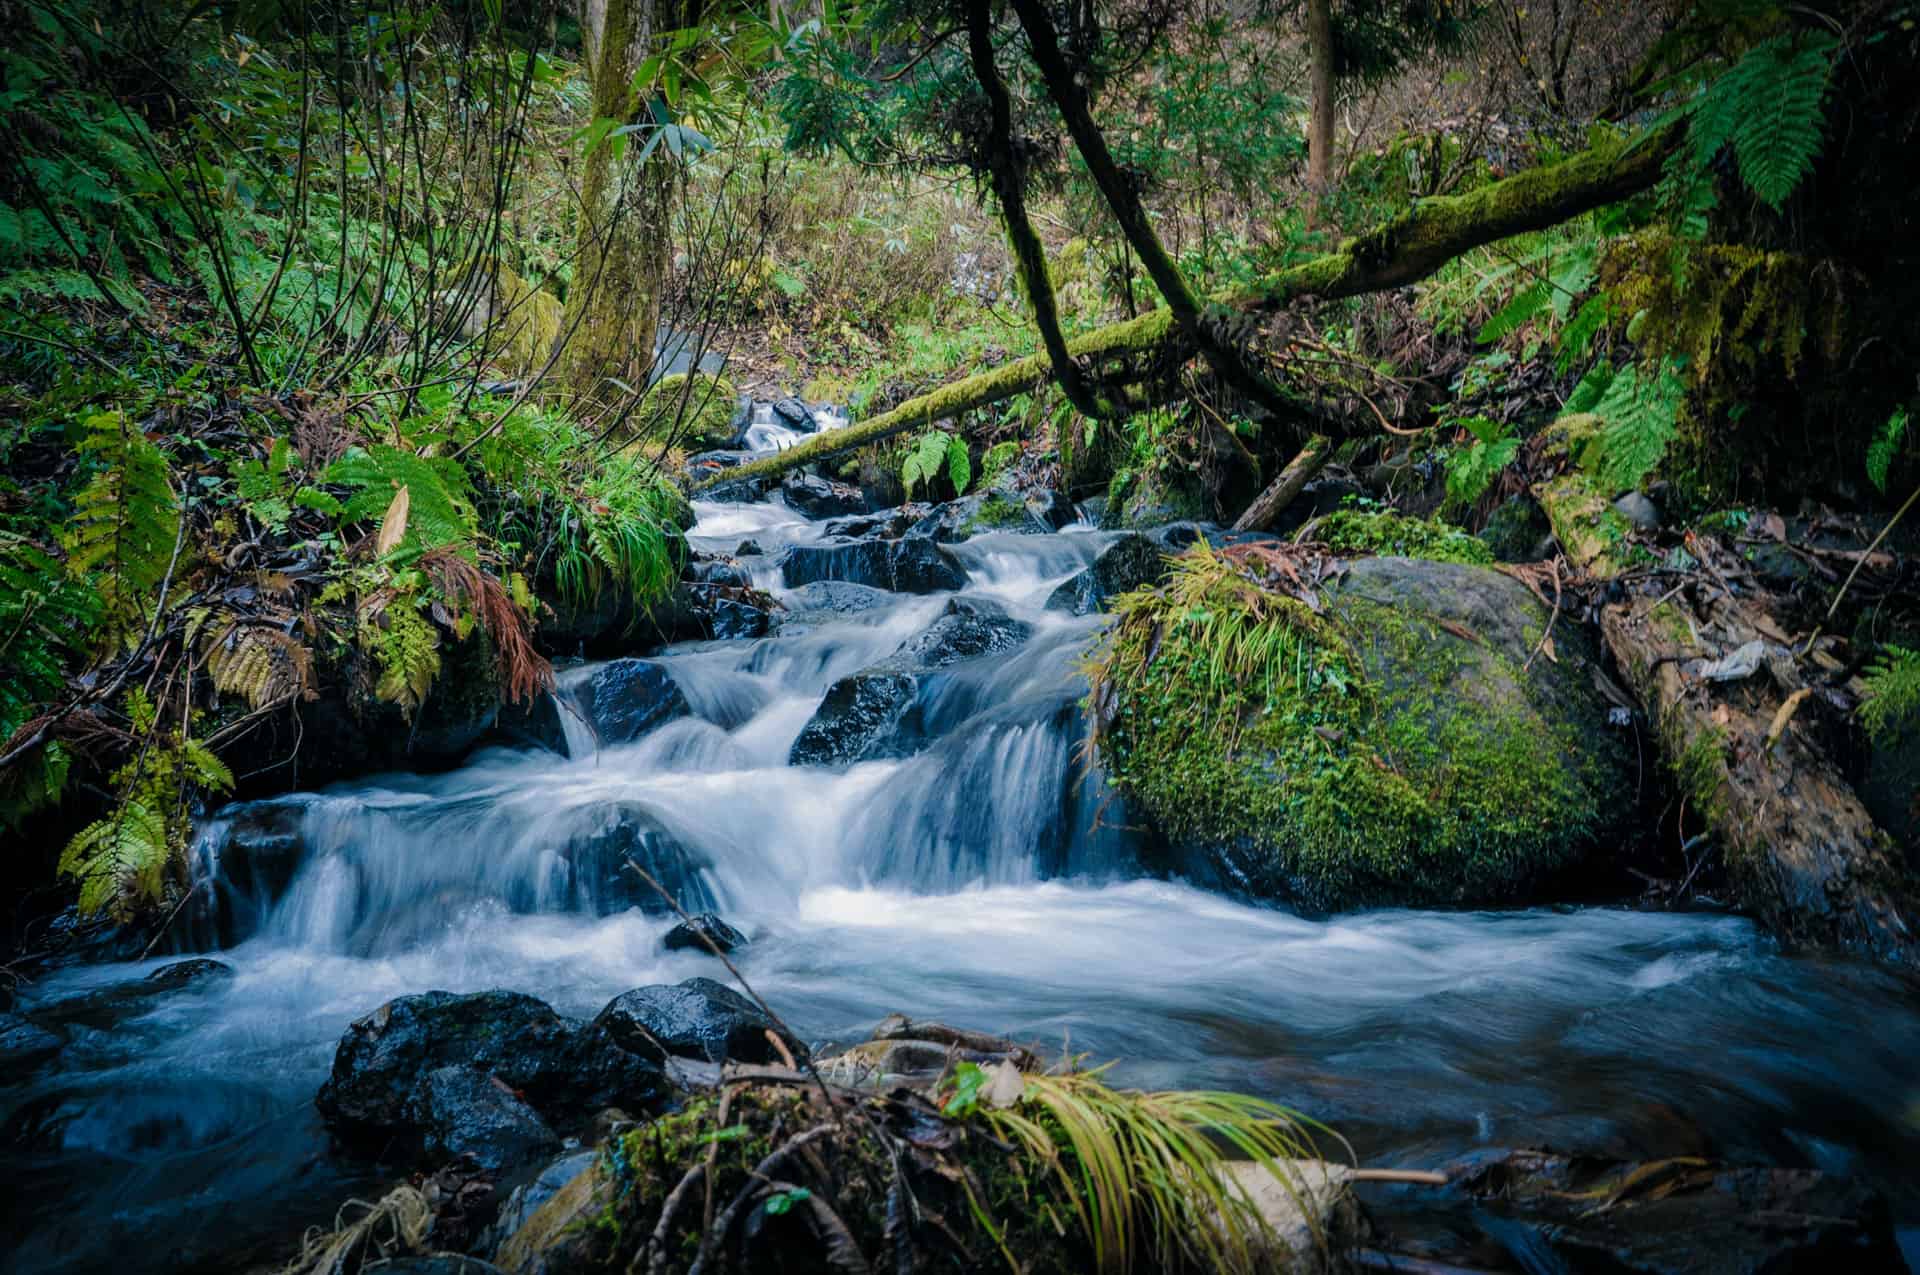 A babbling brook, foliage, rocks and moss.